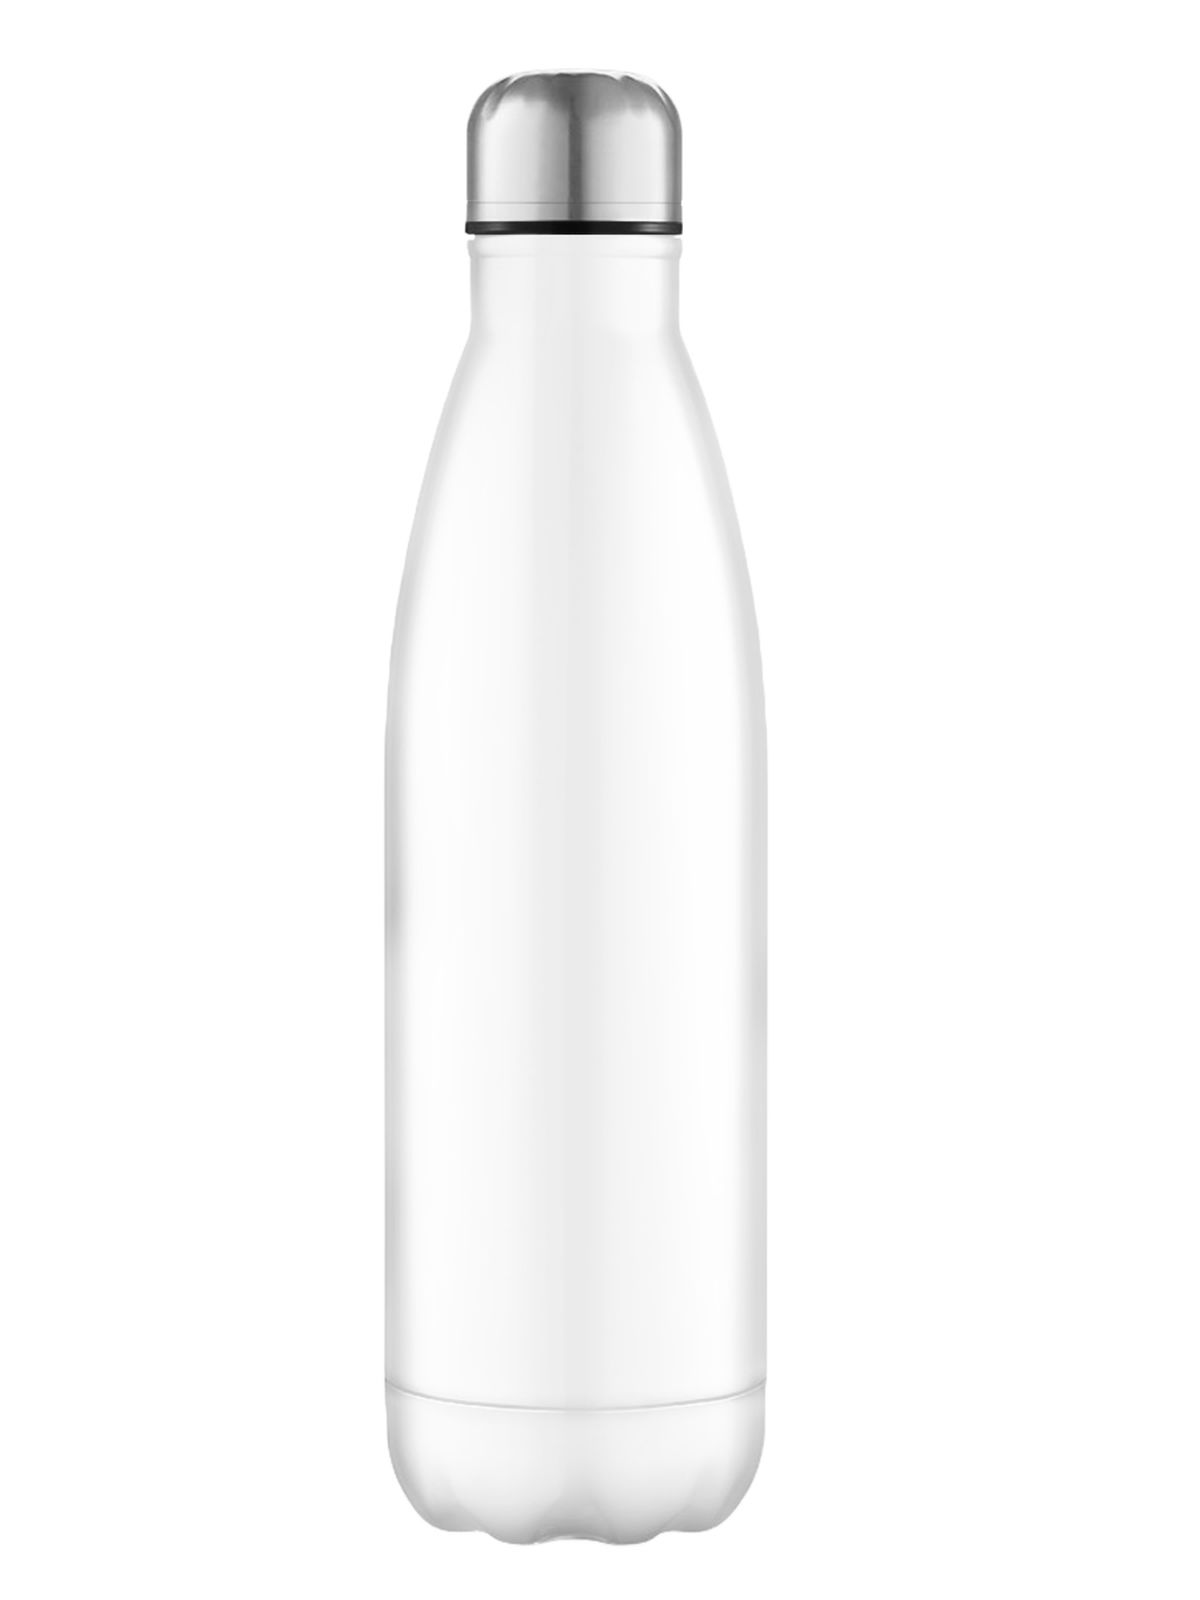 steel-water-bottle-750ml-white.webp